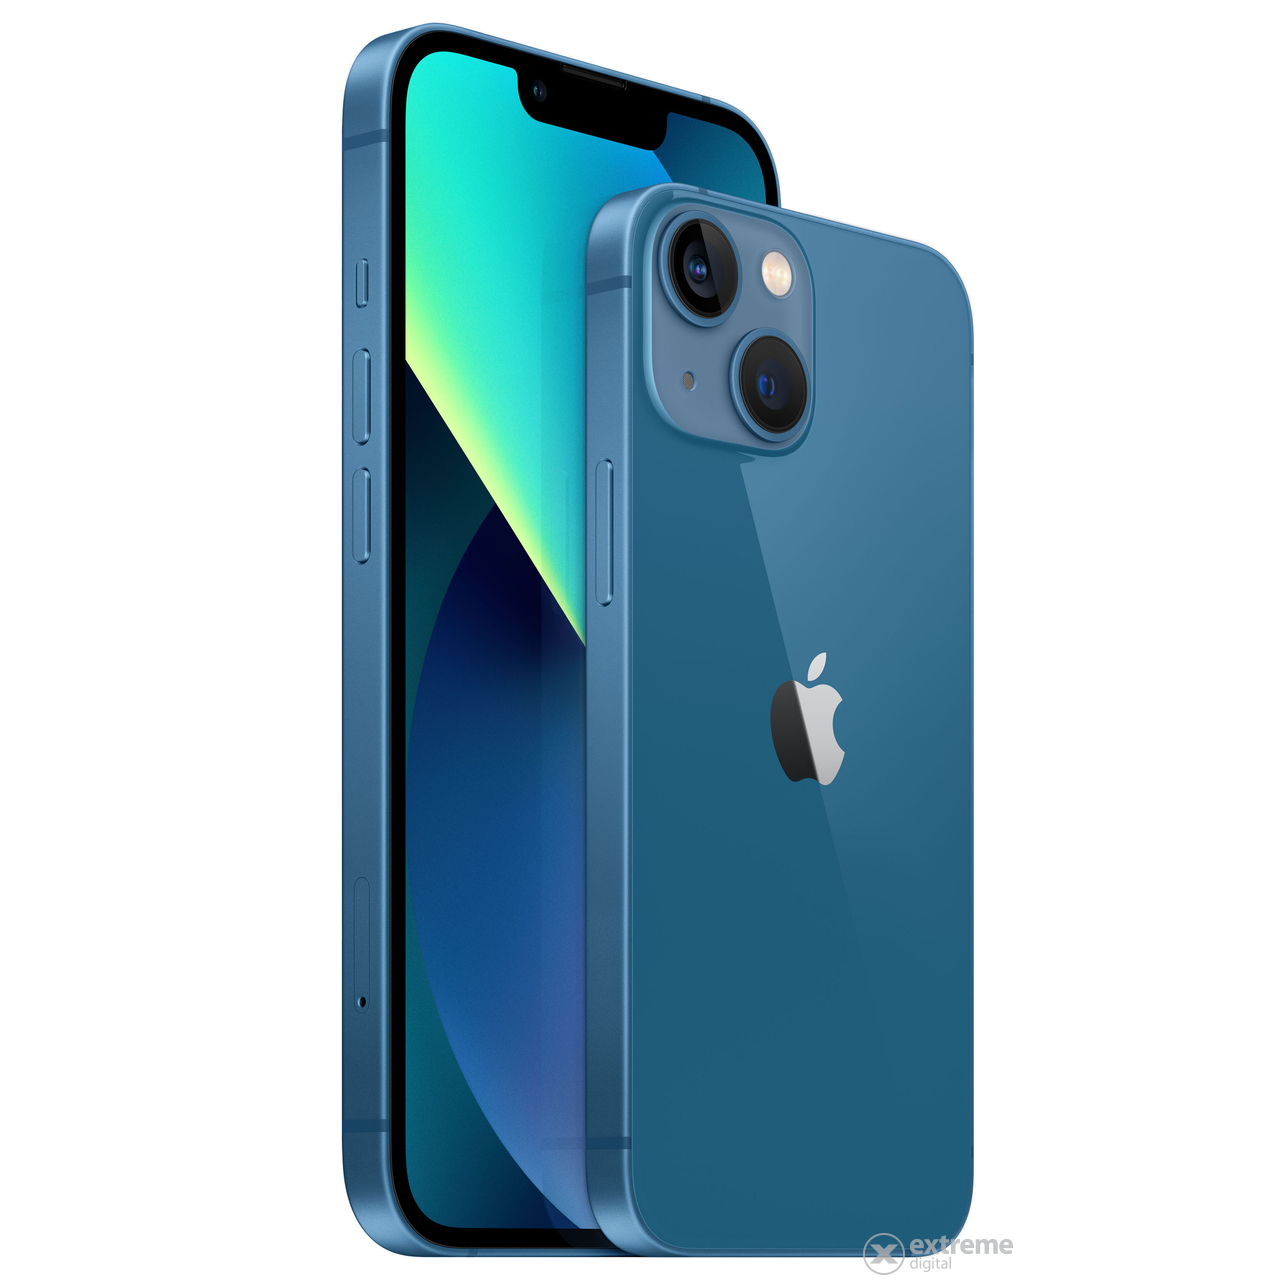 Apple iPhone 13 mini 128GB (mlk43hu/a), Blue